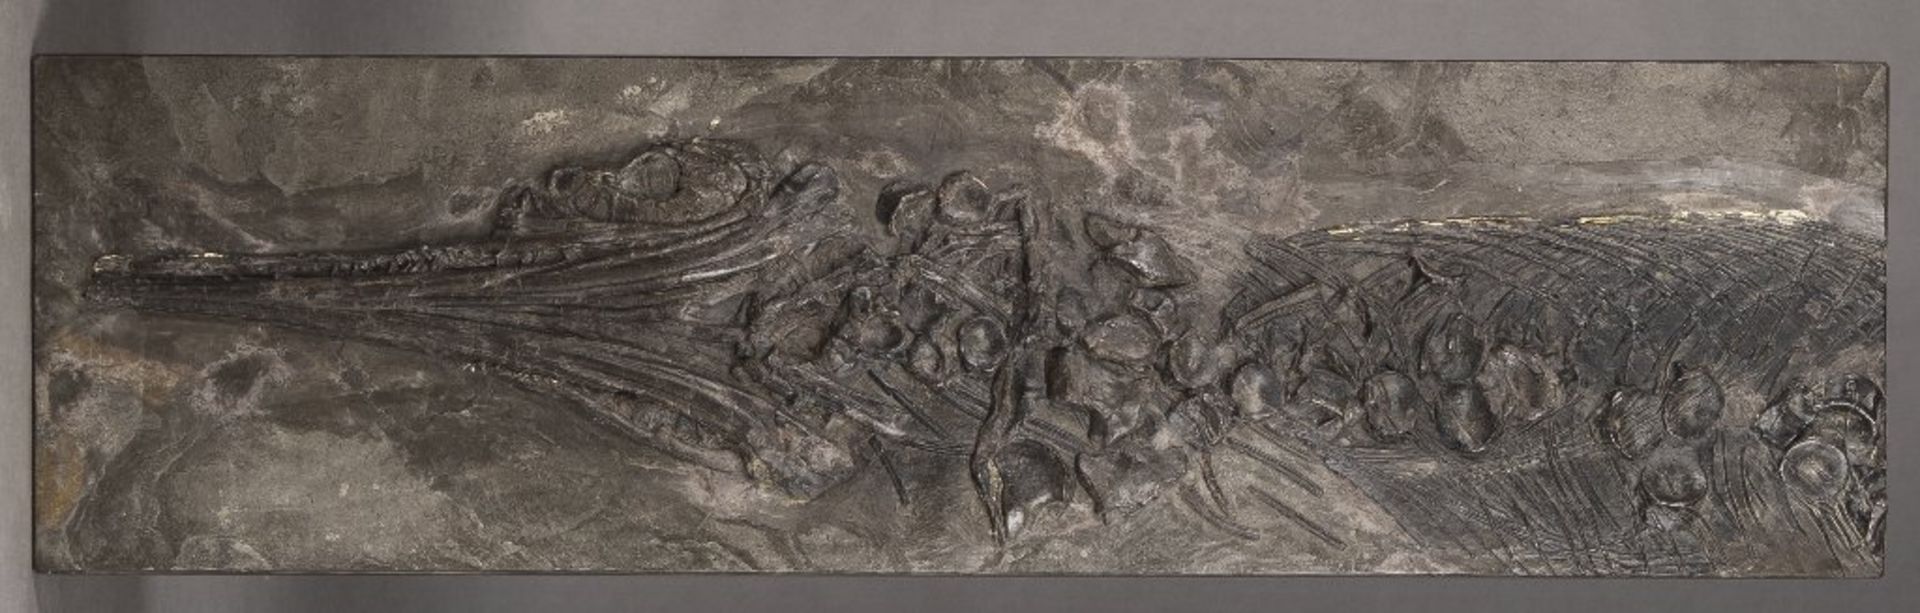 Versteinerung. Fischsaurier Ichthyosaurus Stenopterygius. Lias, Holzmaden. 31 x 110 cm- - -27.00 %